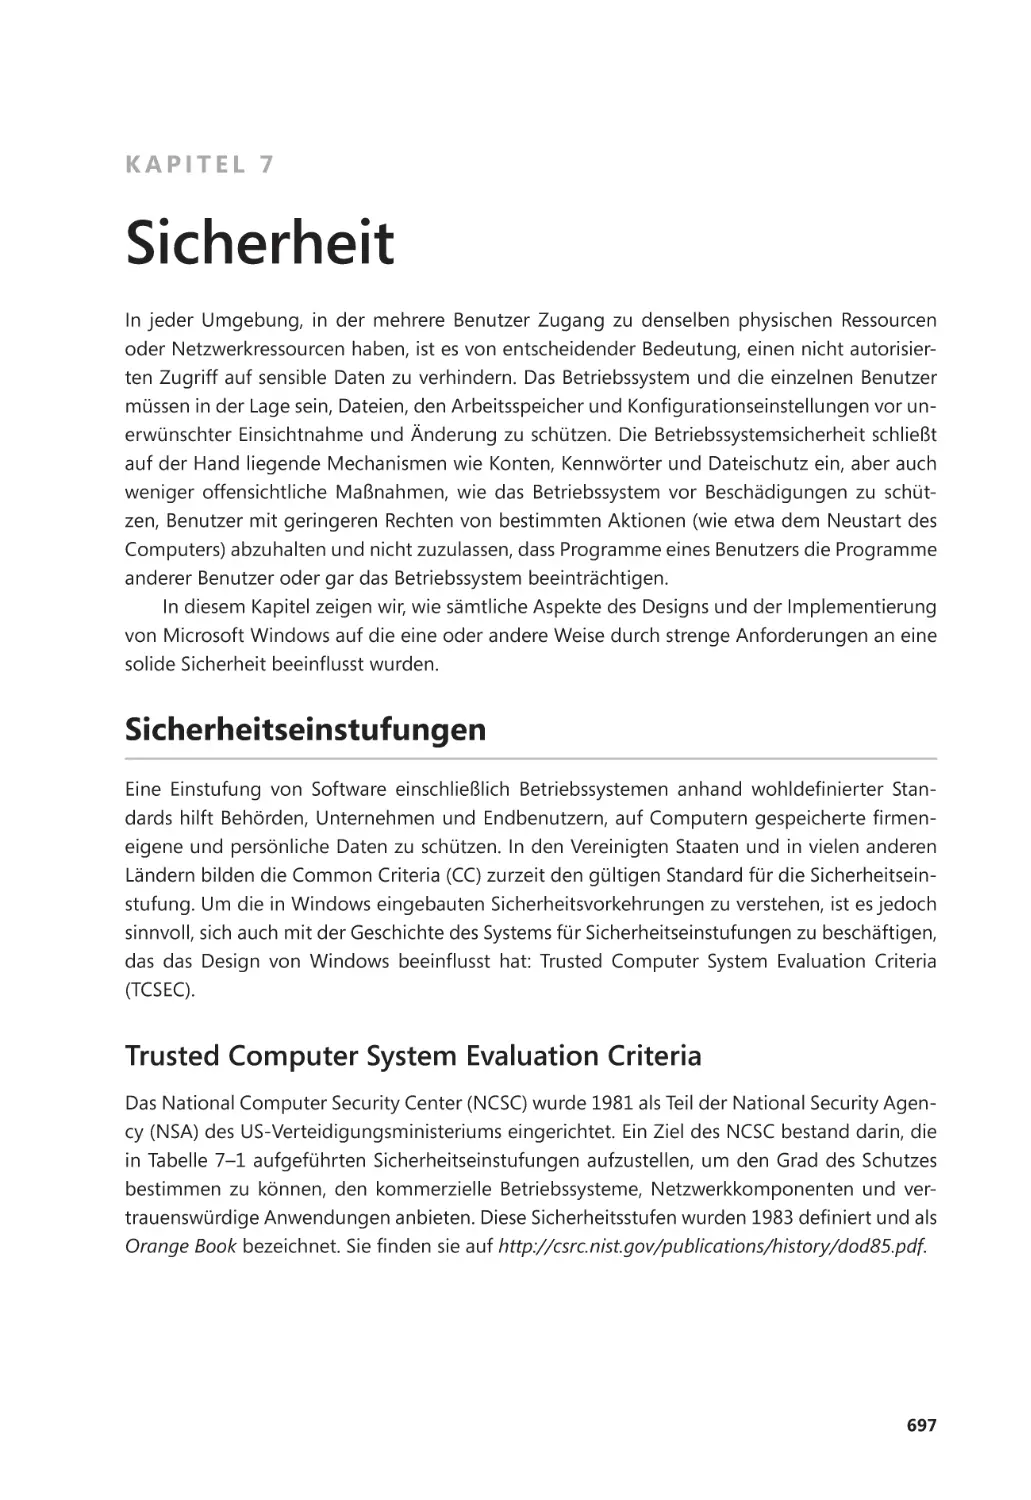 Kapitel 7
Sicherheitseinstufungen
Trusted Computer System Evaluation Criteria